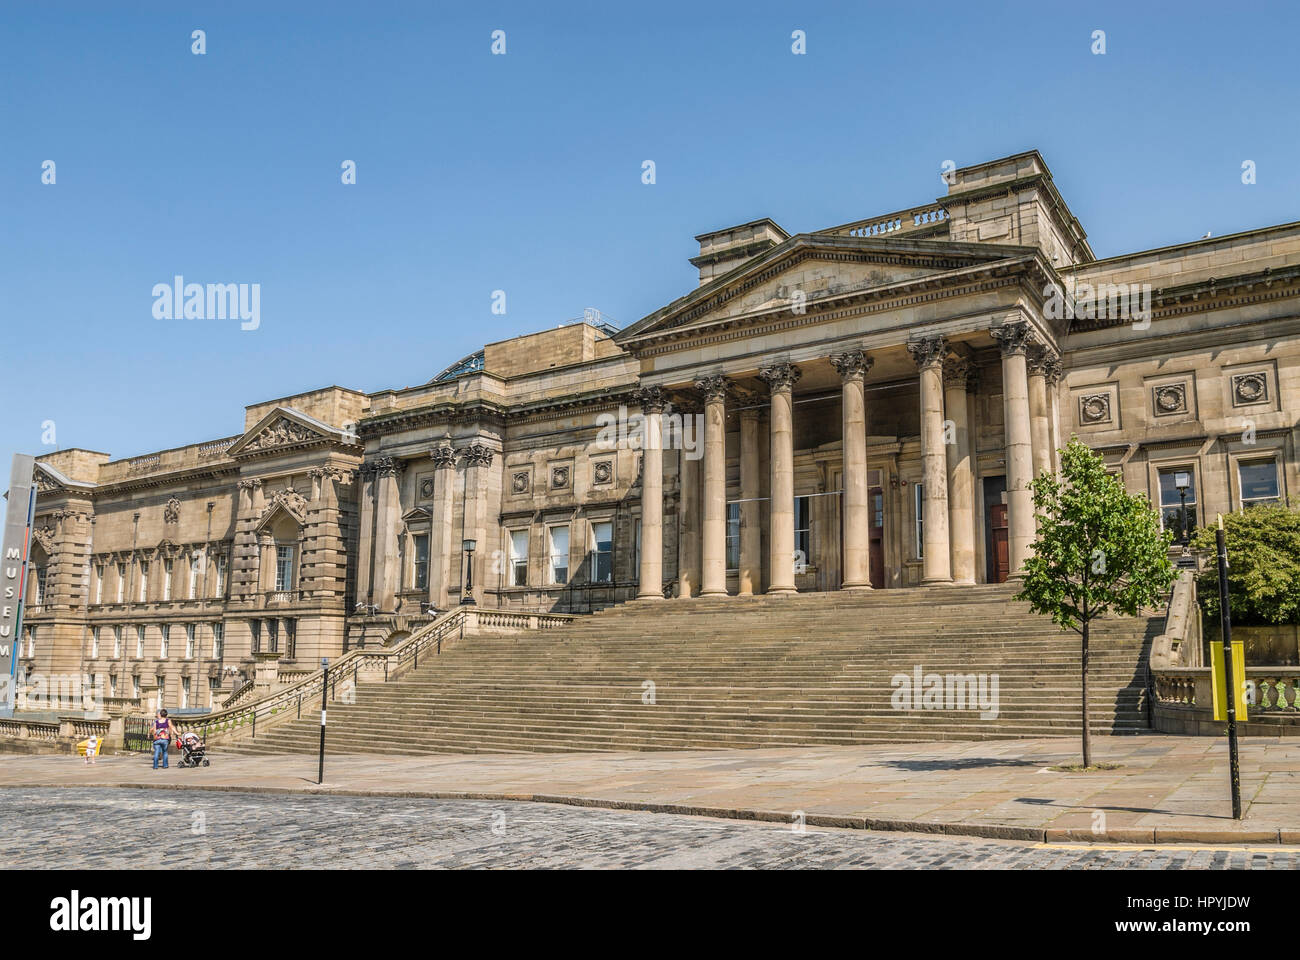 Der Walker Art Gallery ist eine Art Gallery in Liverpool, beherbergt eine der bedeutendsten Kunstsammlungen in England. Stockfoto